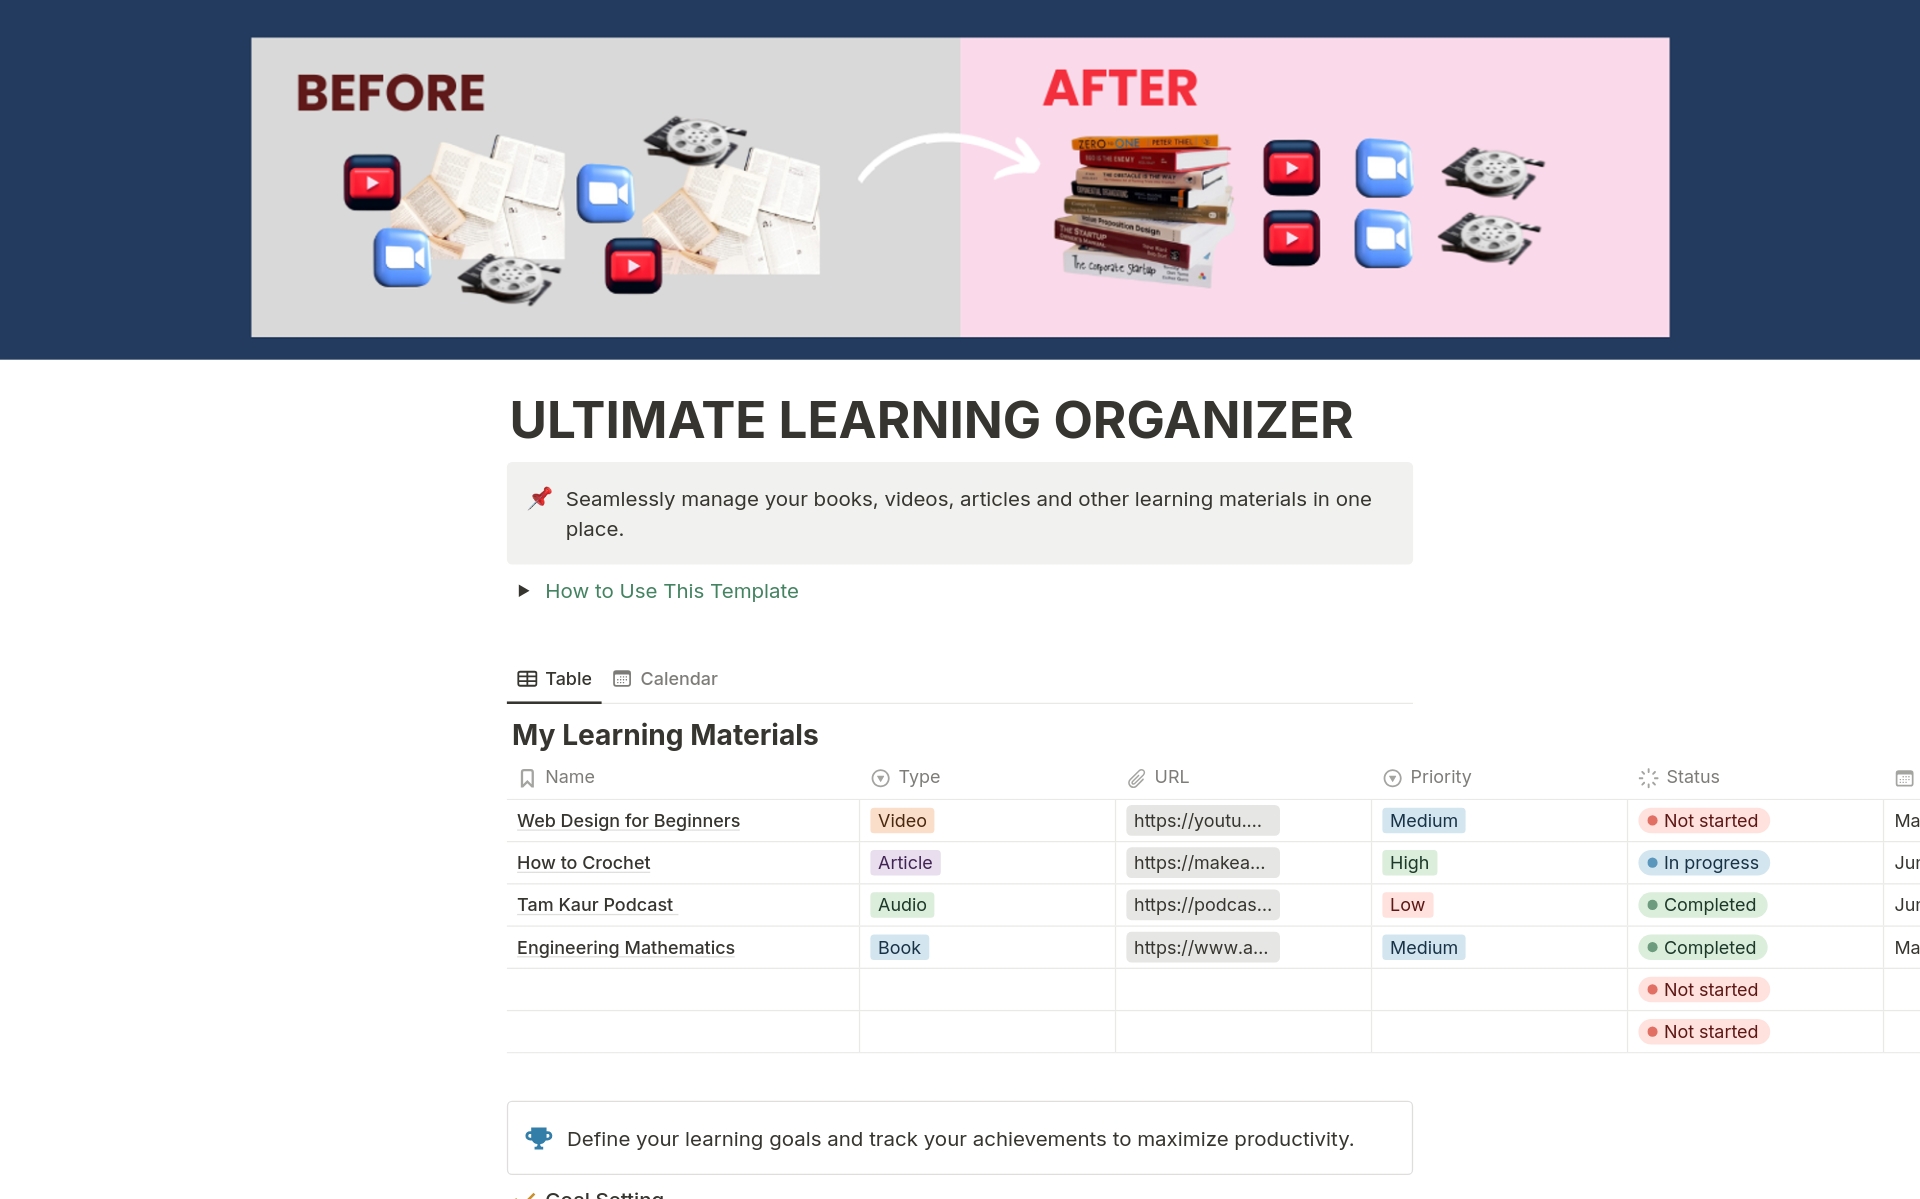 Uma prévia do modelo para Ultimate Learning Organizer